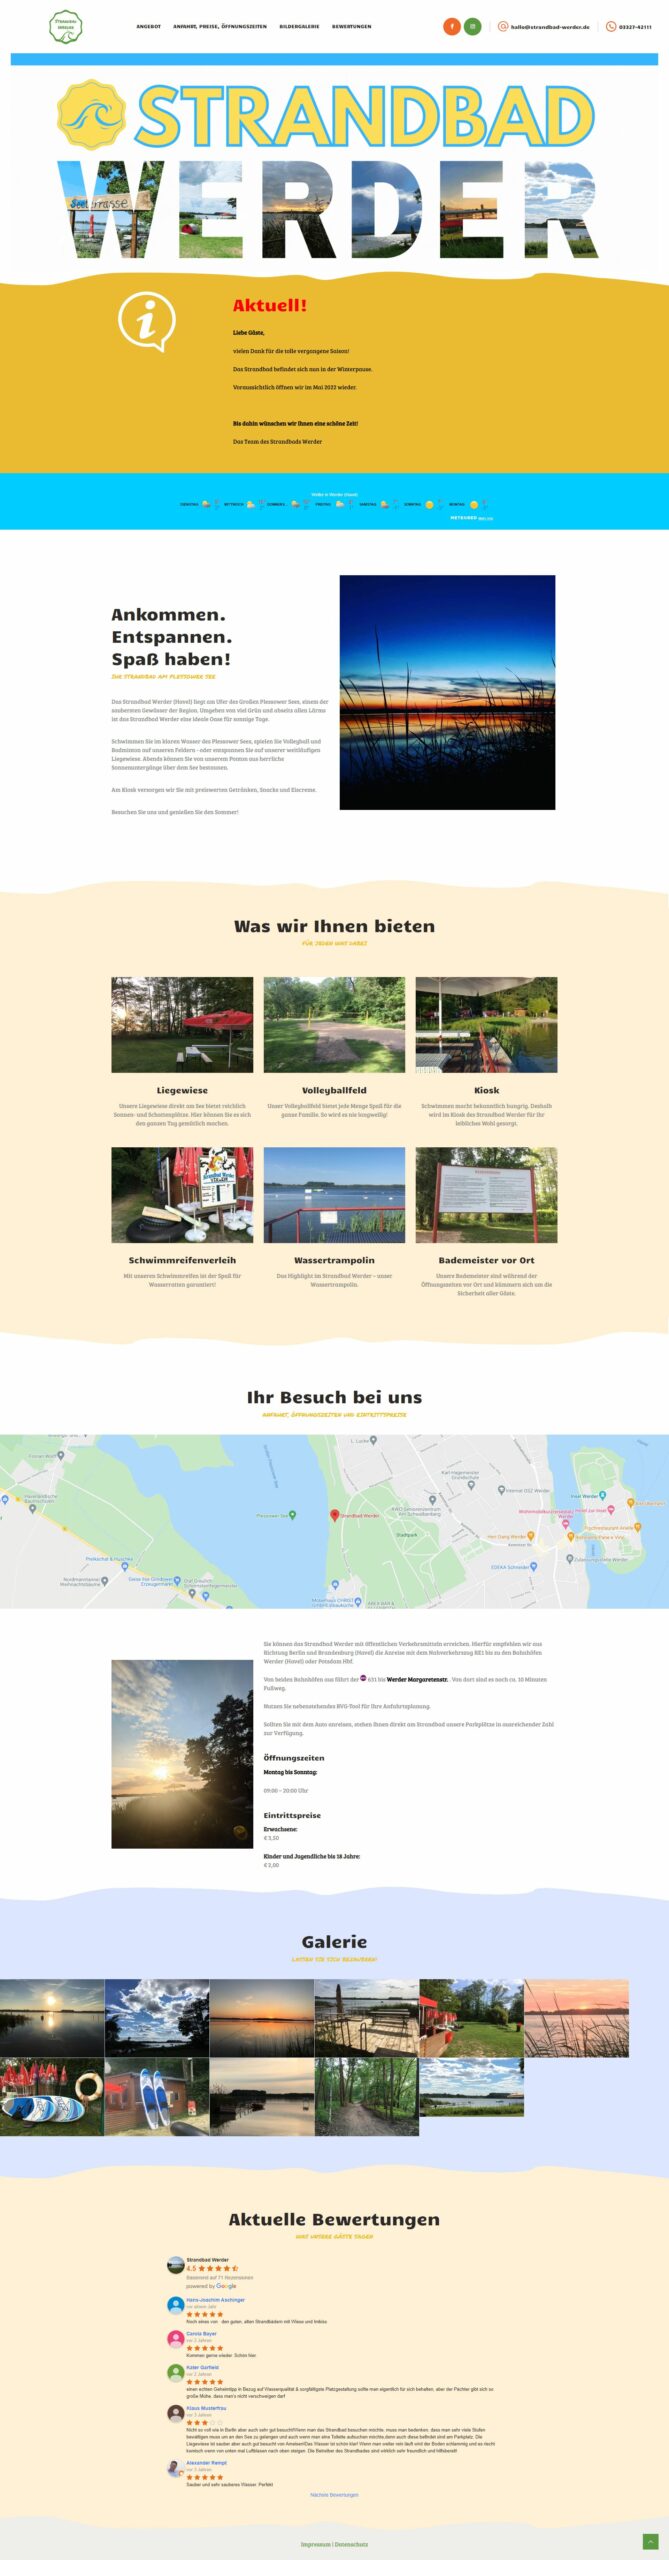 Strandbad Werder Website